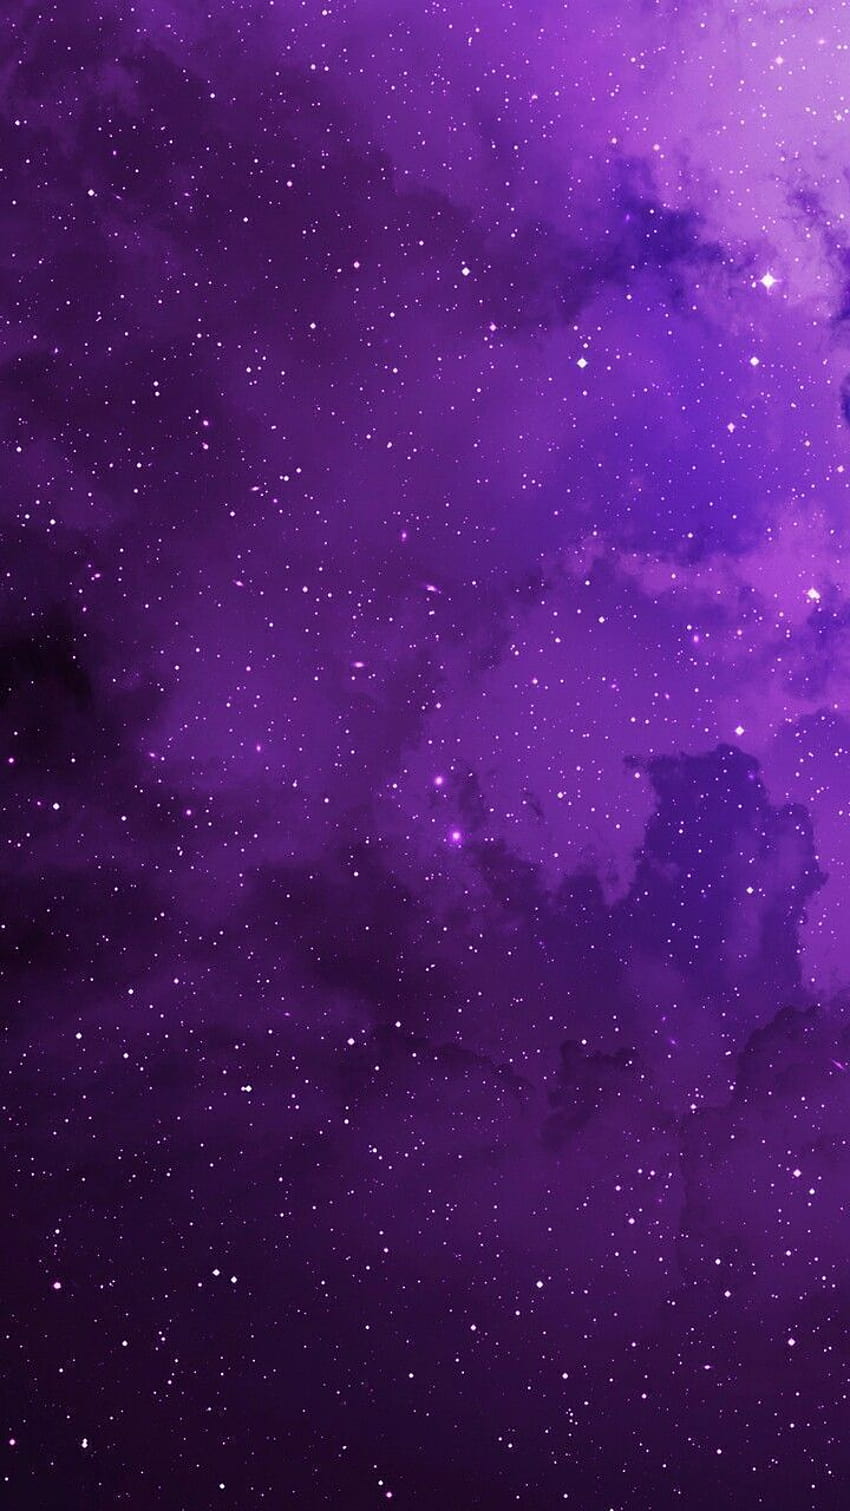 Purple aesthetic: Màu tím là một trong những tông màu đang được yêu thích hiện nay, đặc biệt là trong trang trí nội thất và thời trang. Hãy tham gia khám phá thế giới tím thư thái và tinh tế với Purple aesthetic. Hình ảnh liên quan sẽ cho bạn cảm giác thư giãn và thoải mái.